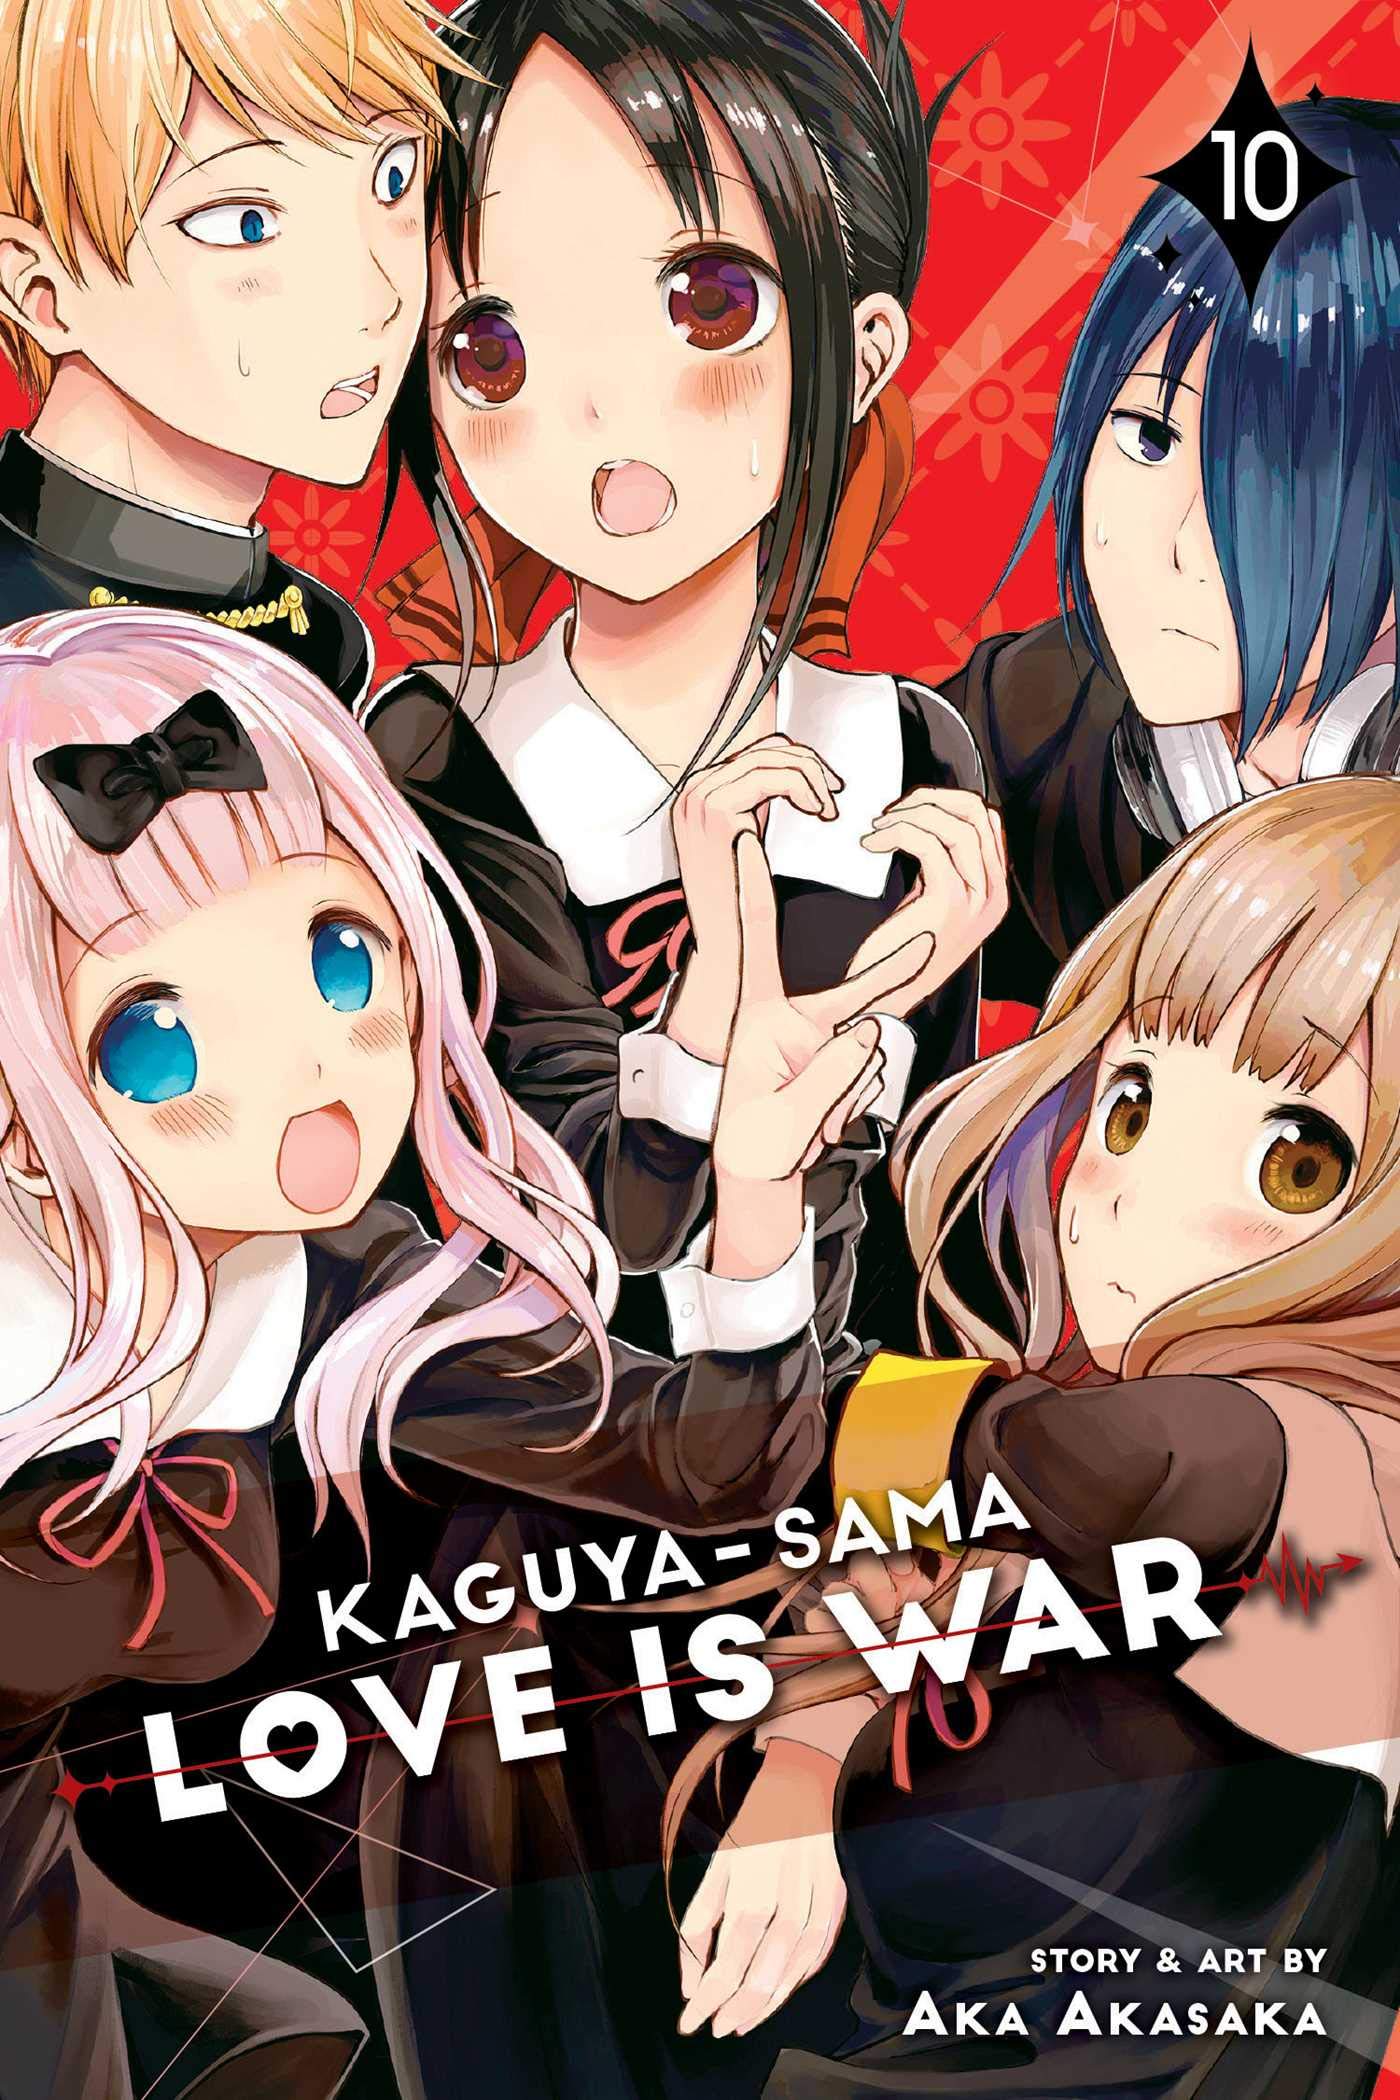 El manga Kaguya-sama: Love is War superó las 12 millones de copias en